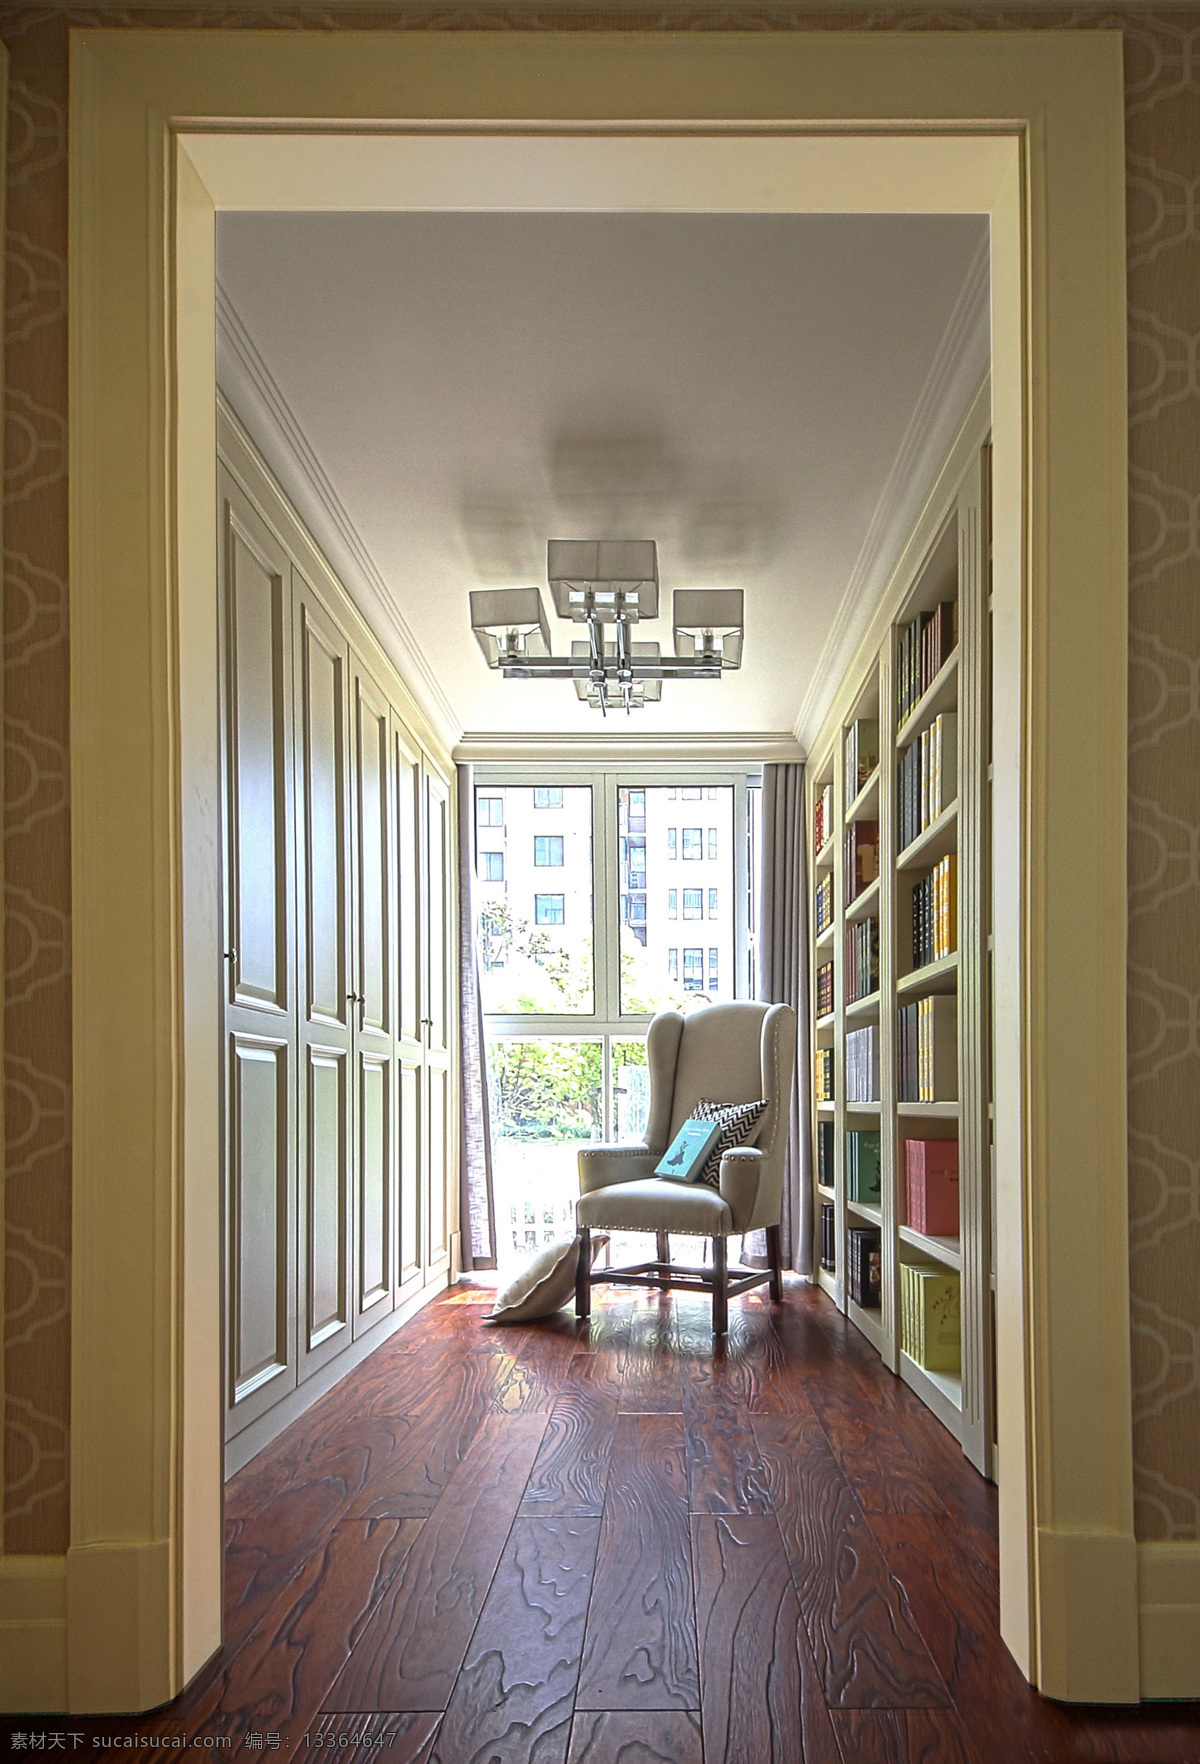 极 简 明亮 美式 书房 装修 效果图 白色书架墙 布艺座椅 创意吊灯 落地窗 木地板 室内设计